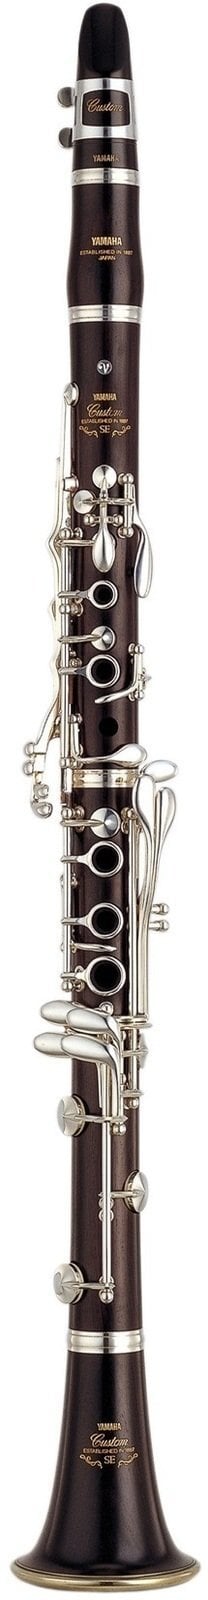 Bb klarinet Yamaha YCL SEV R Bb klarinet